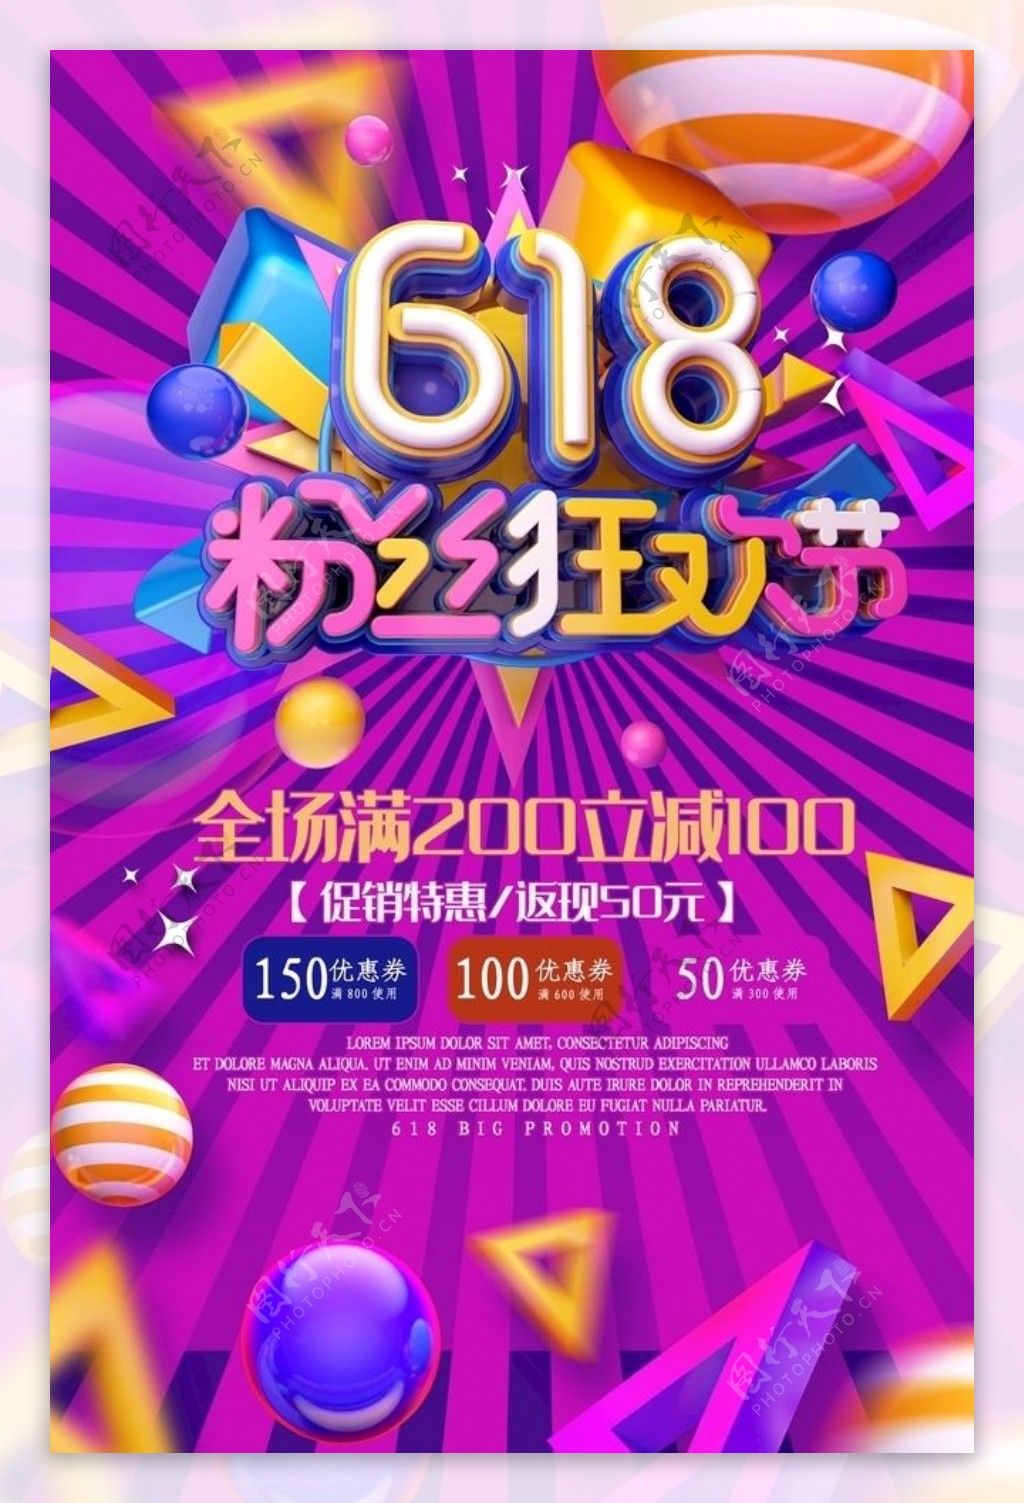 618粉丝狂欢节促销海报